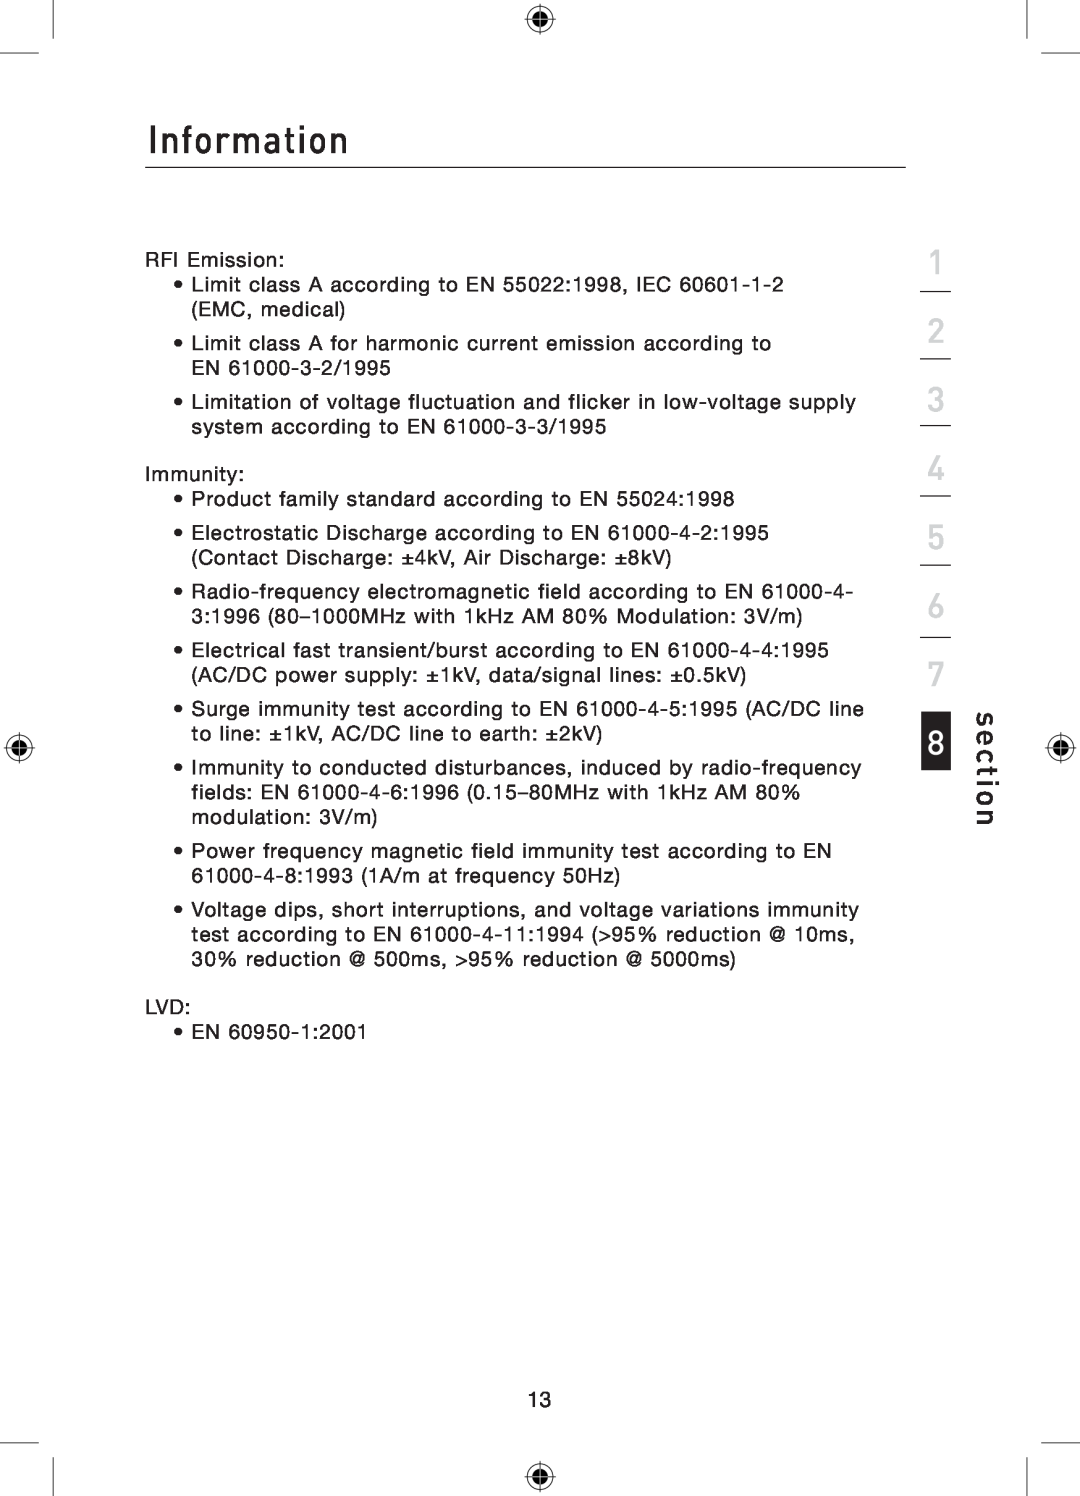 Belkin P75179ea manual Information, section, RFI Emission 